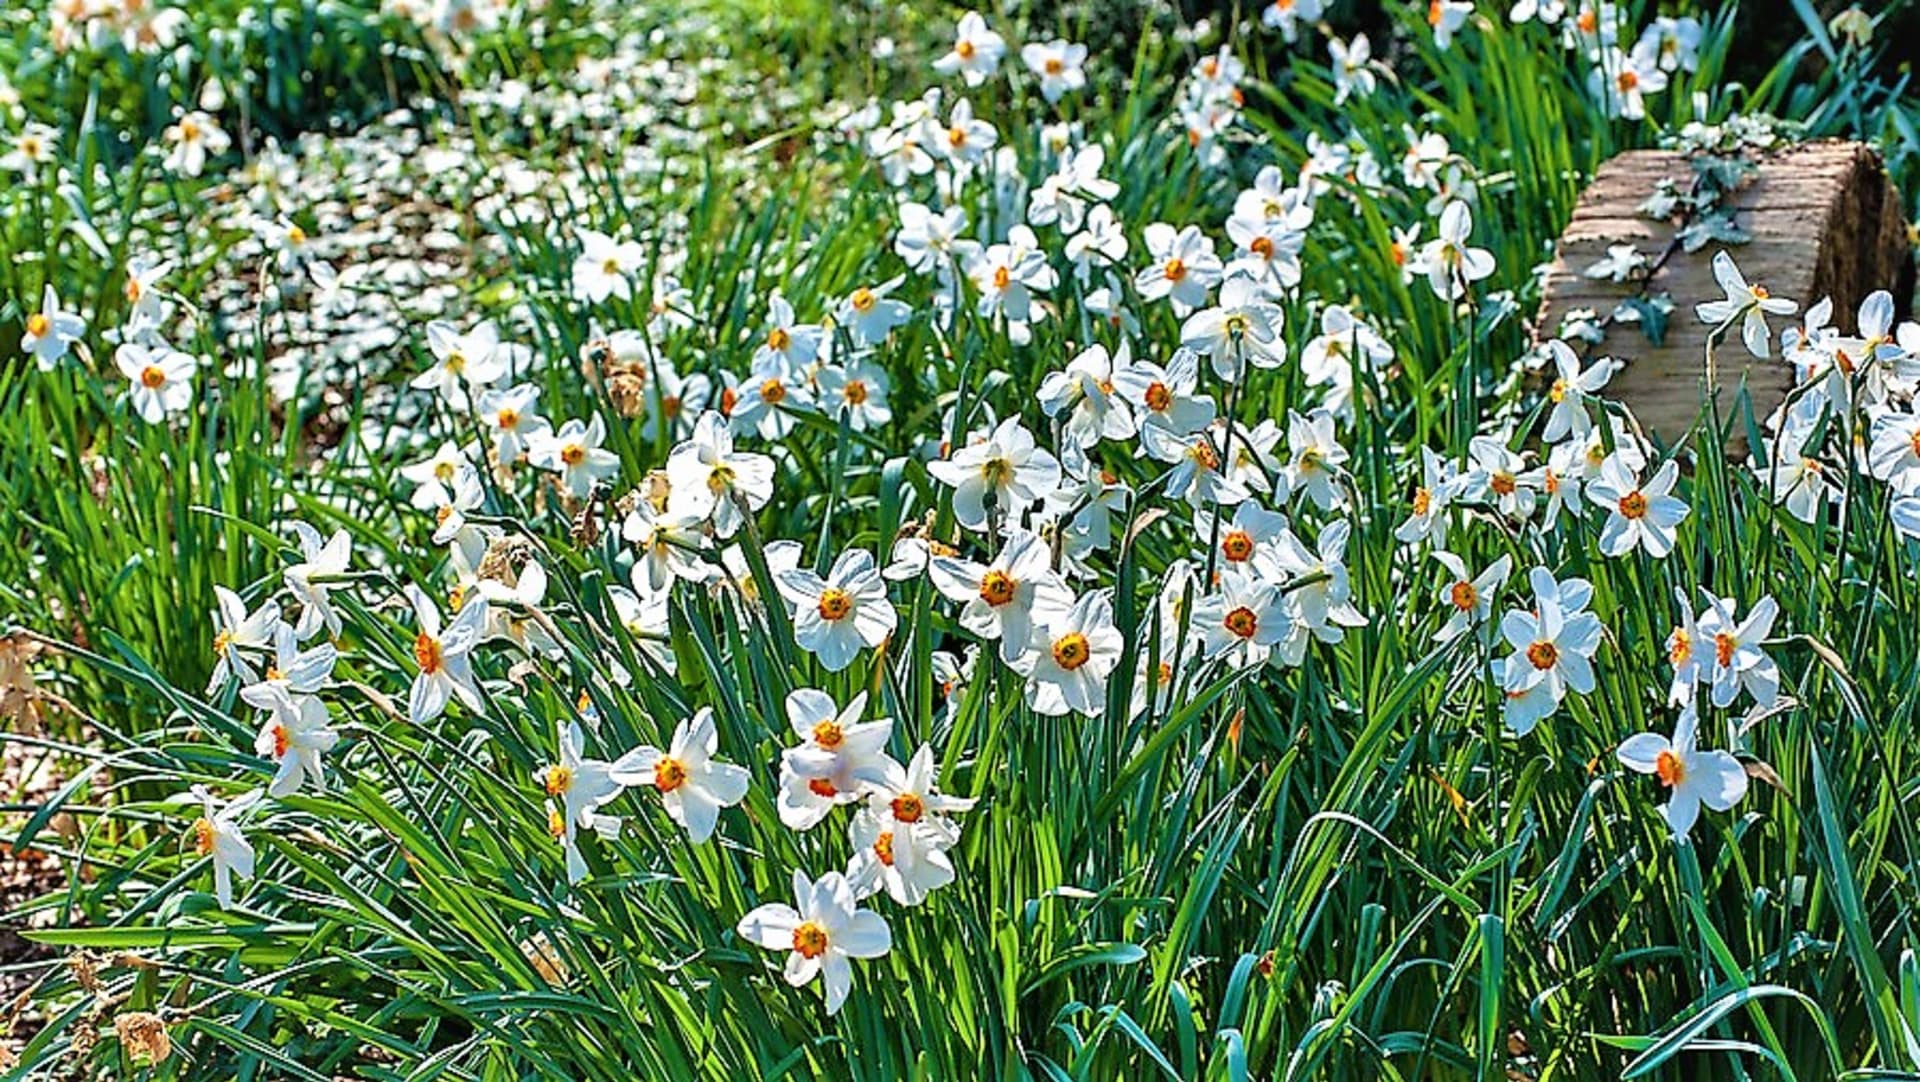 Narcis bílý je vhodný i pro začínající zahrádkáře, pěstuje se snadno. Hodí se do trvalkových záhonů jako lem, vynikne ve skupinách samostatně i v kombinaci s ostatními jarními cibulovinami.